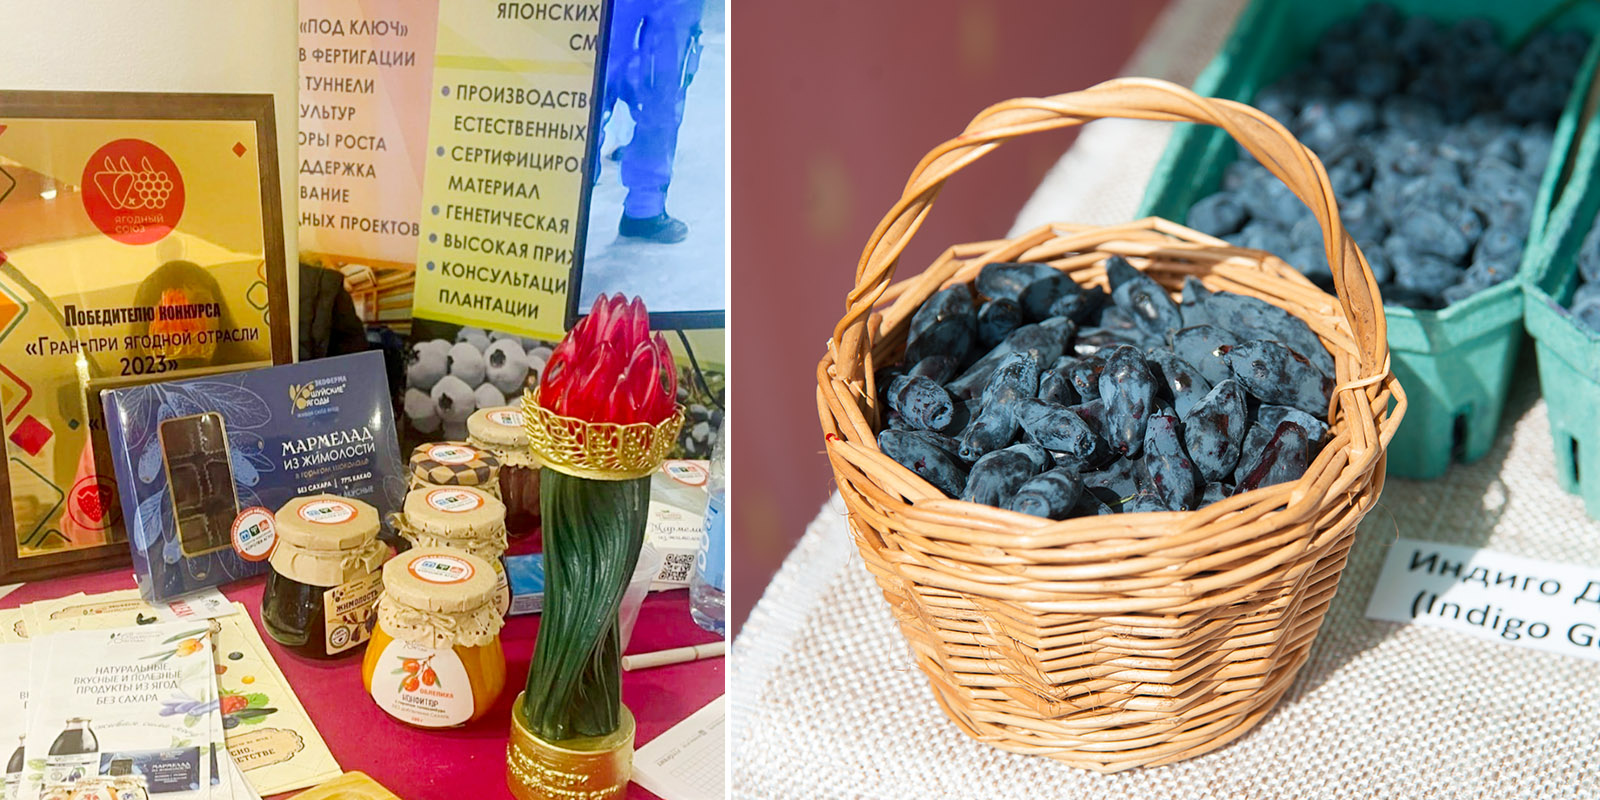 Компания по производству ягод из Ивановской области победила в федеральном отраслевом конкурсе